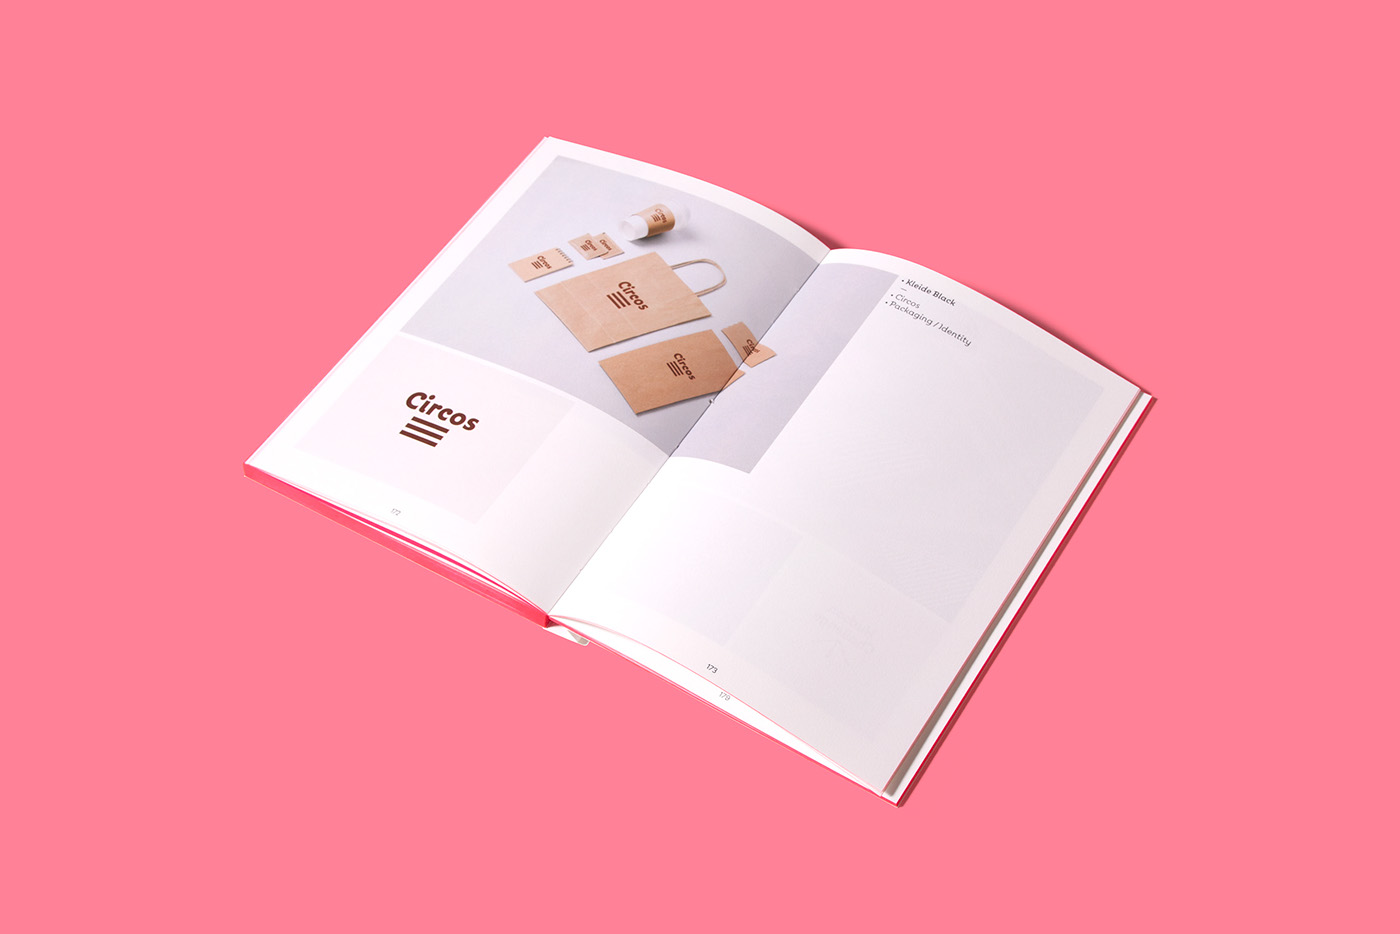 kleide book edition clean embossing debossing elegant gradient pink